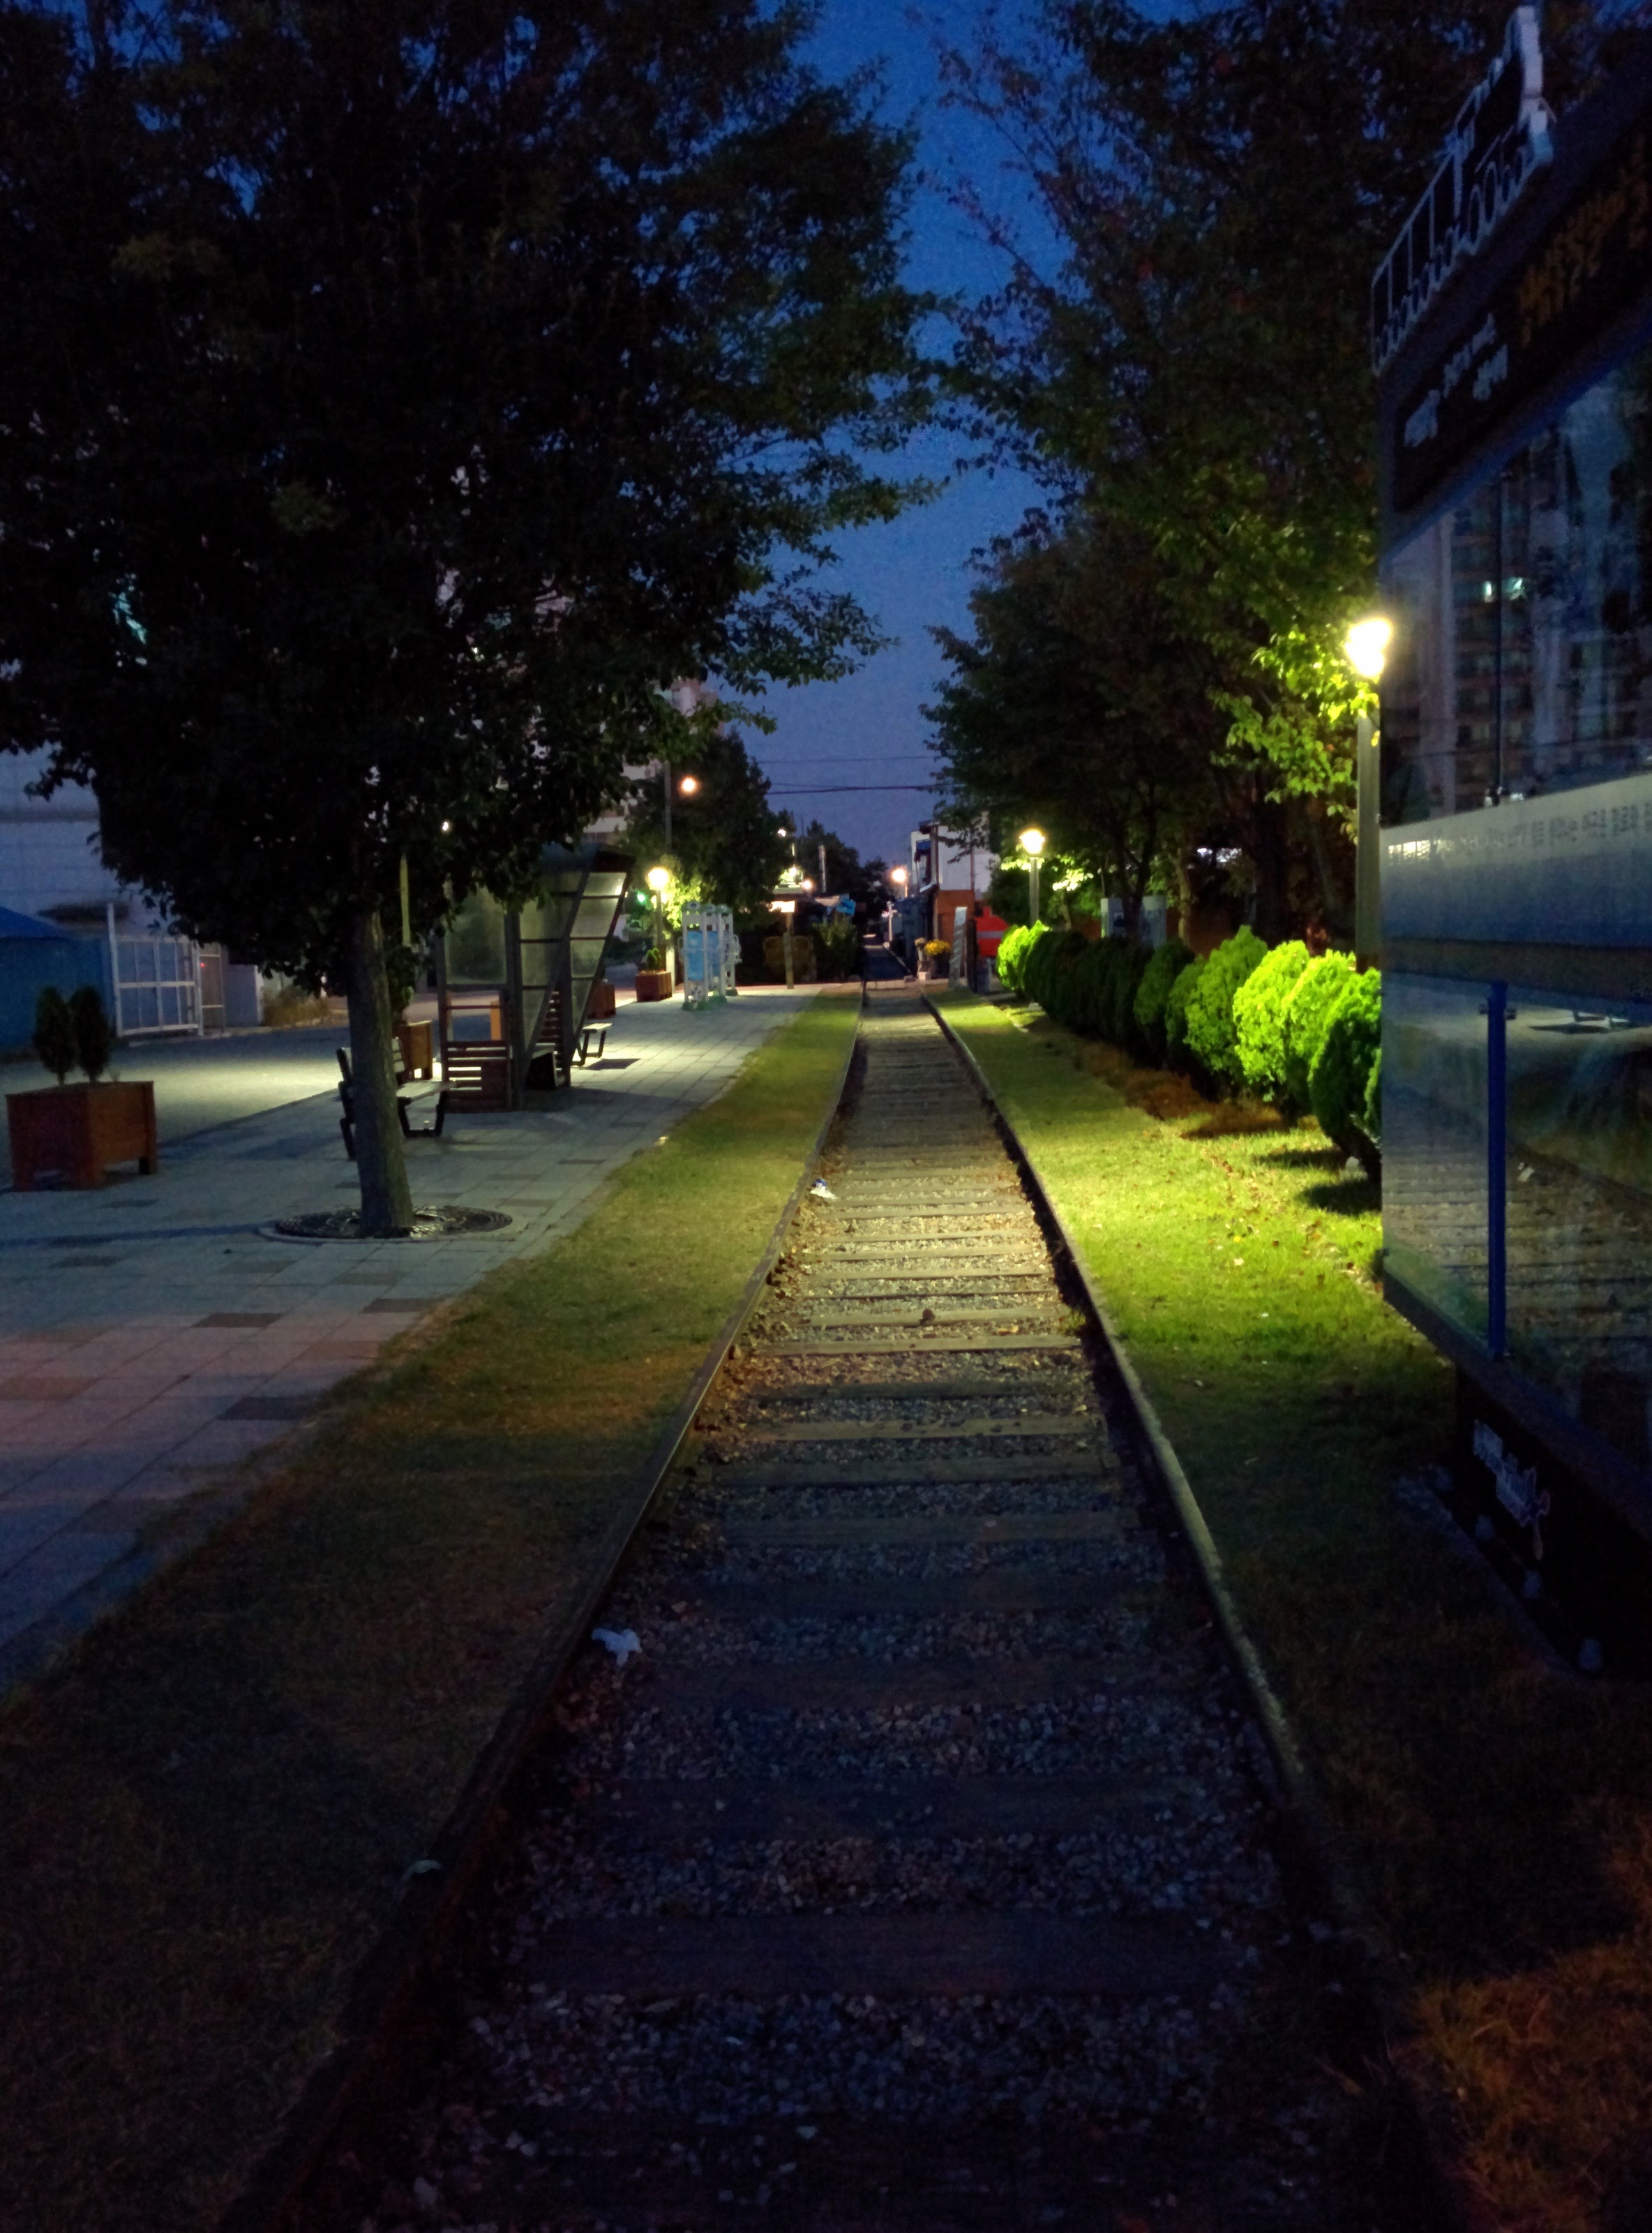 IMG_20151010_060713.jpg 기찻길이 지나가는 군산 경암동 철길마을 새벽 풍경